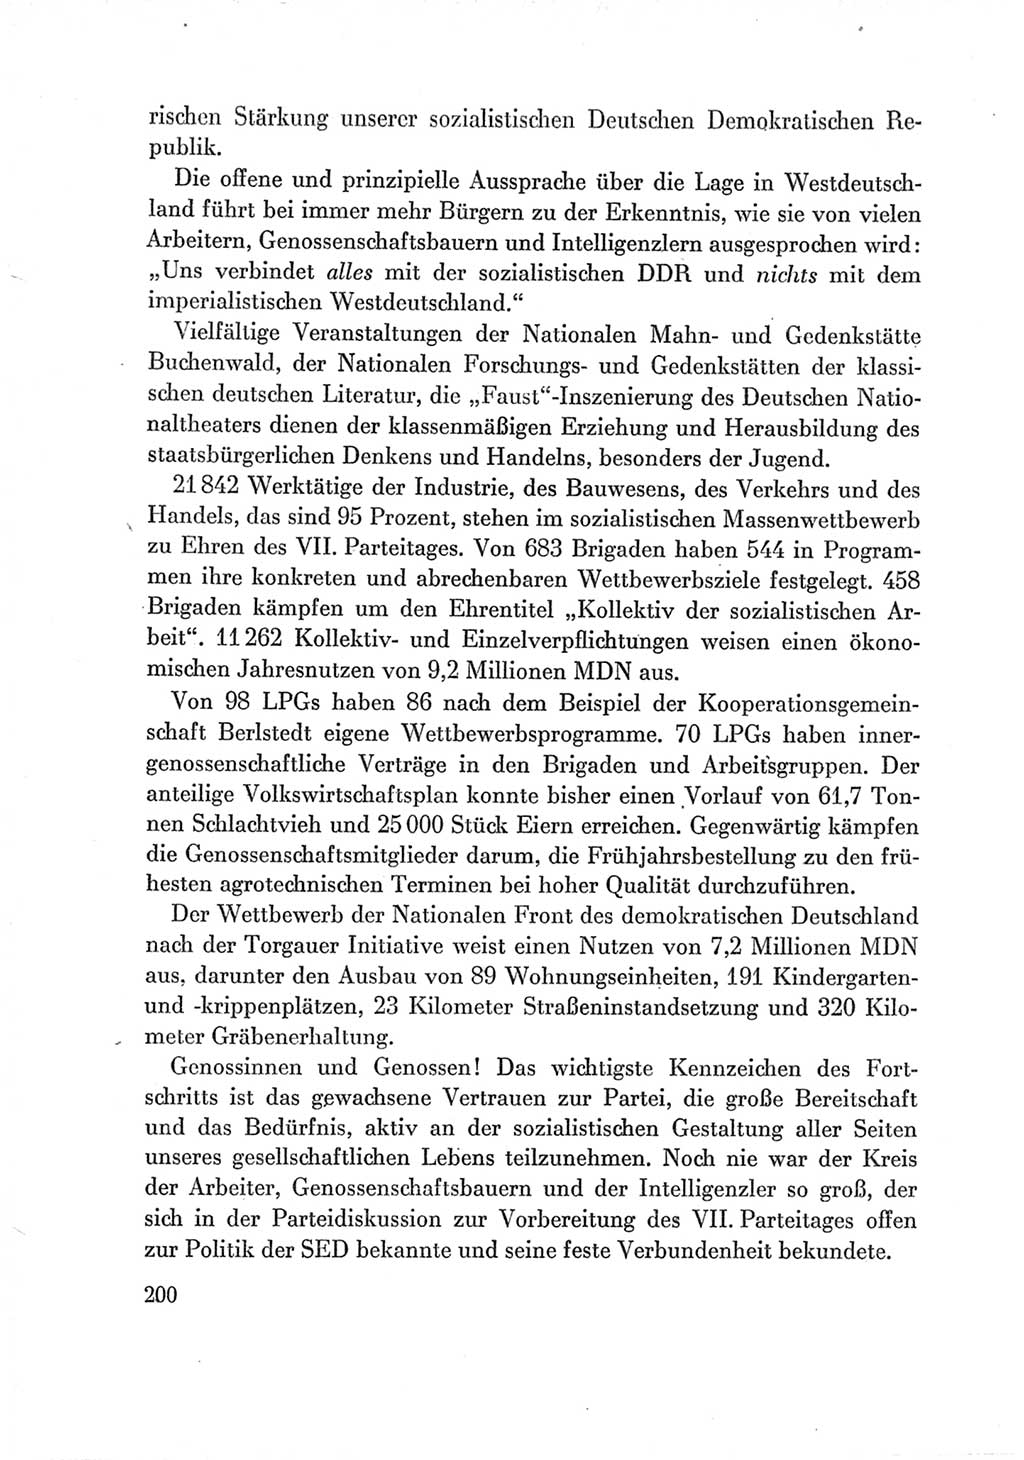 Protokoll der Verhandlungen des Ⅶ. Parteitages der Sozialistischen Einheitspartei Deutschlands (SED) [Deutsche Demokratische Republik (DDR)] 1967, Band Ⅲ, Seite 200 (Prot. Verh. Ⅶ. PT SED DDR 1967, Bd. Ⅲ, S. 200)